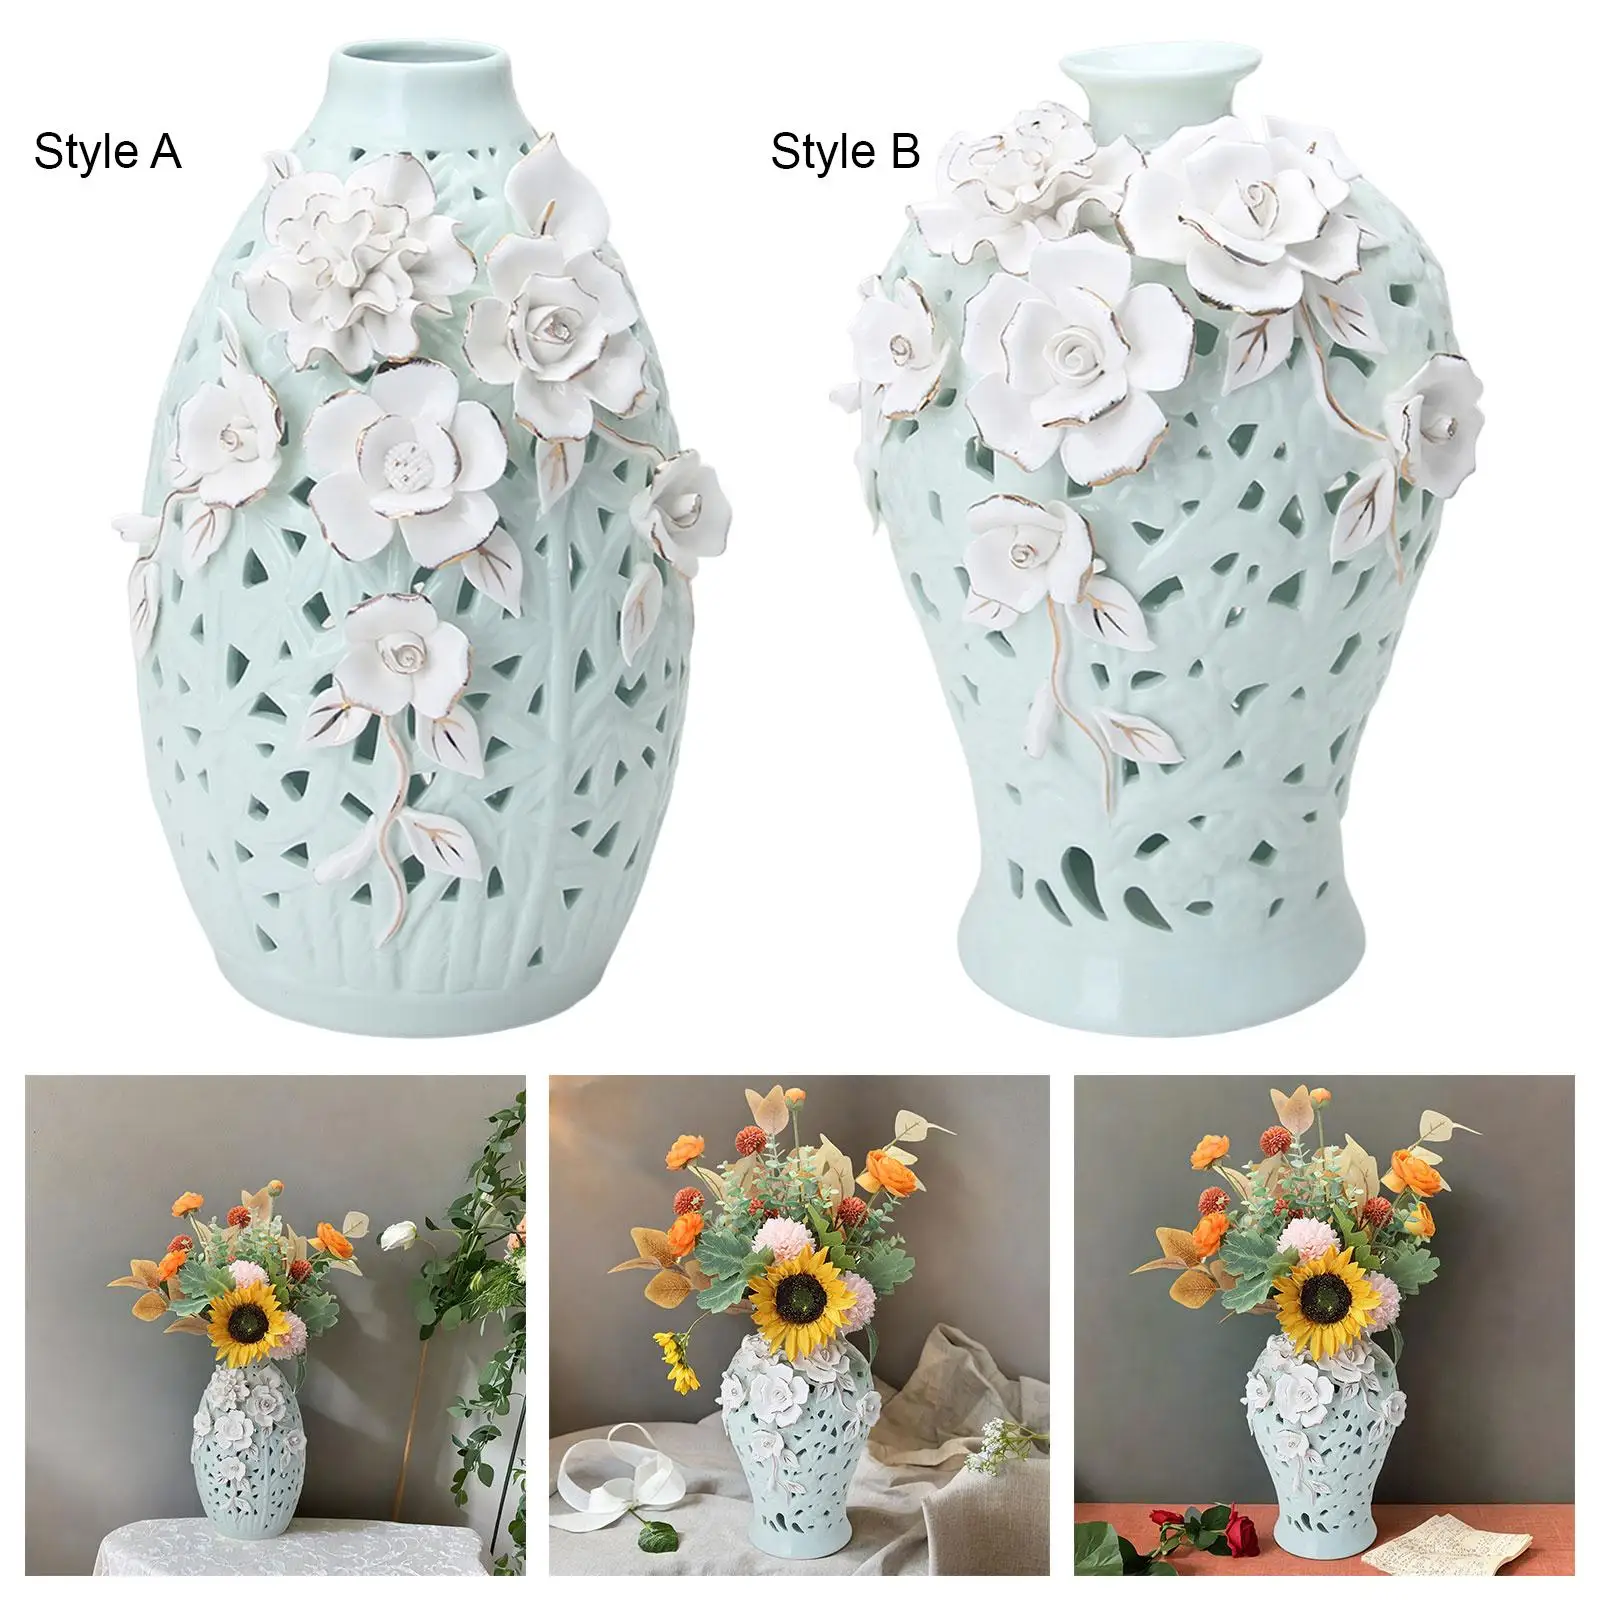 Ceramic Vase Flower Vase Ginger Jar Display Oriental Decorative Jar for Living Room Table Centerpiece Bedroom Party Decoration